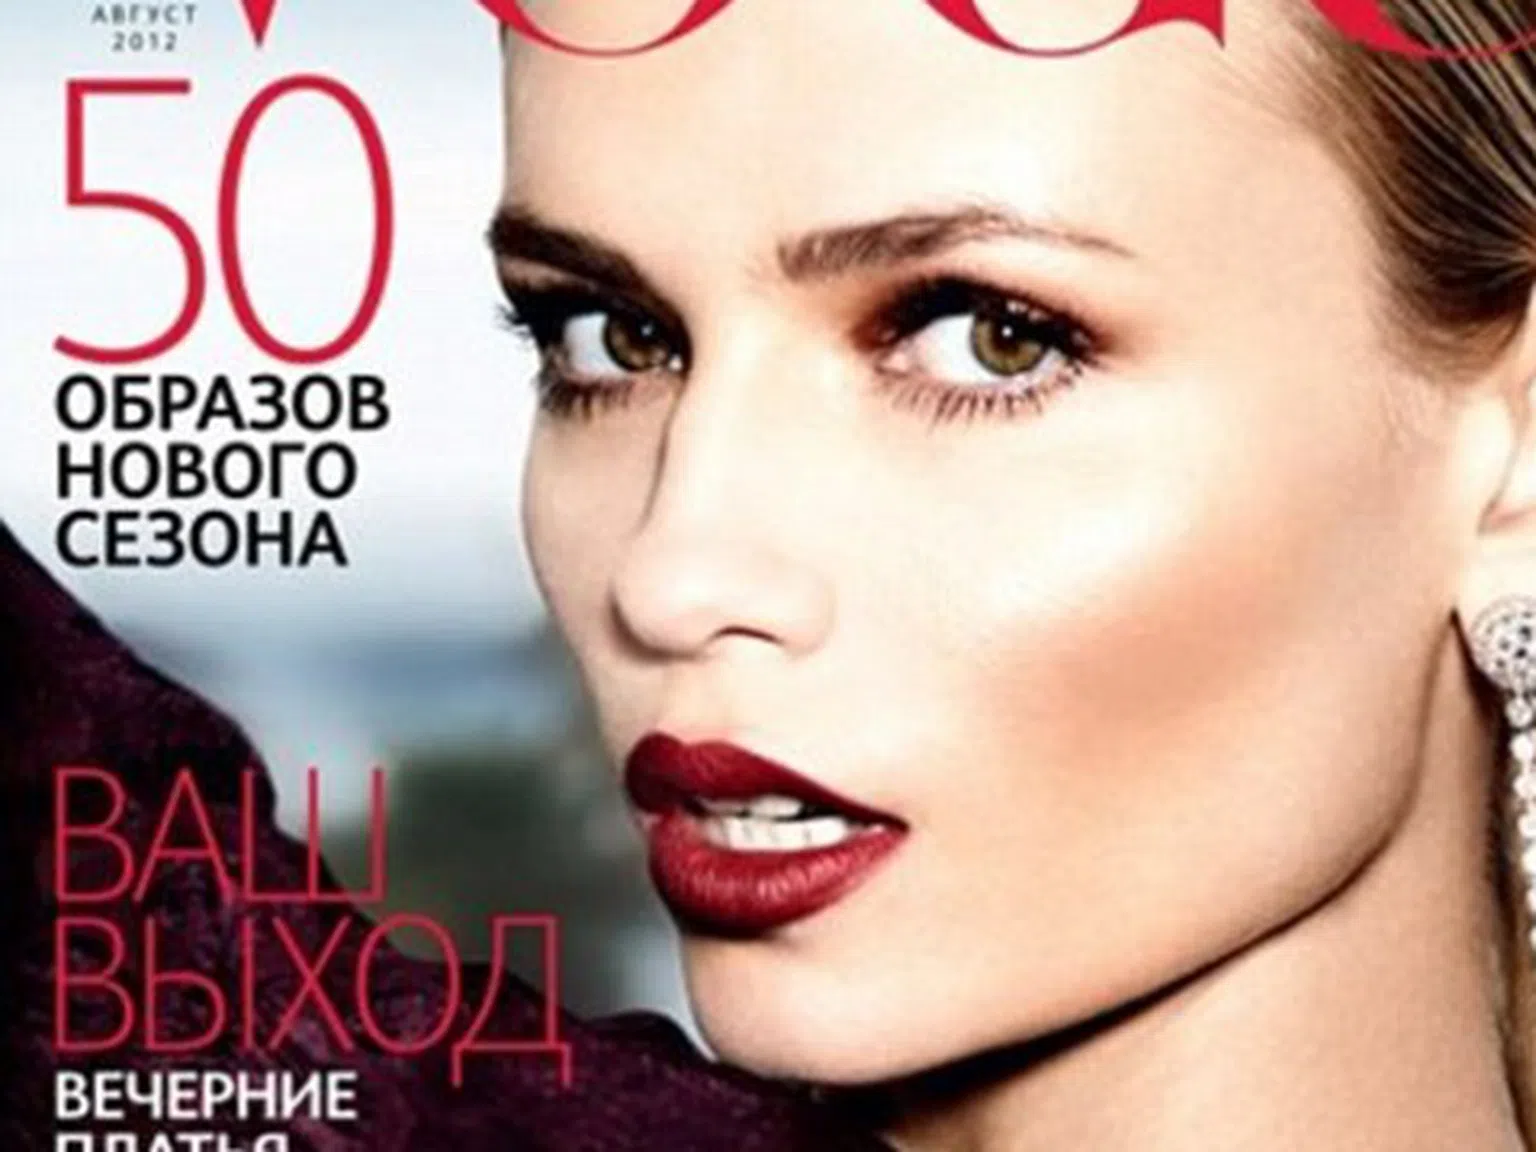 Руският Vogue "отряза" ръката на манекенка